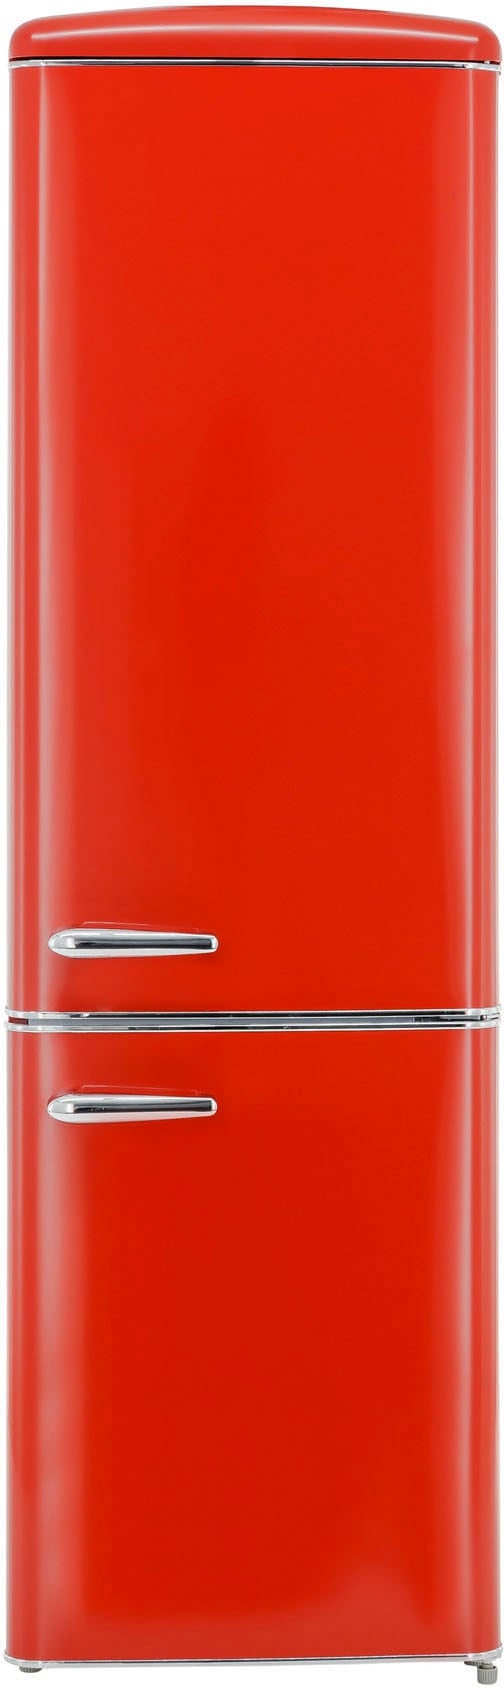 Kühlschränke in Rot kaufen » auf Rechnung und Raten | BAUR